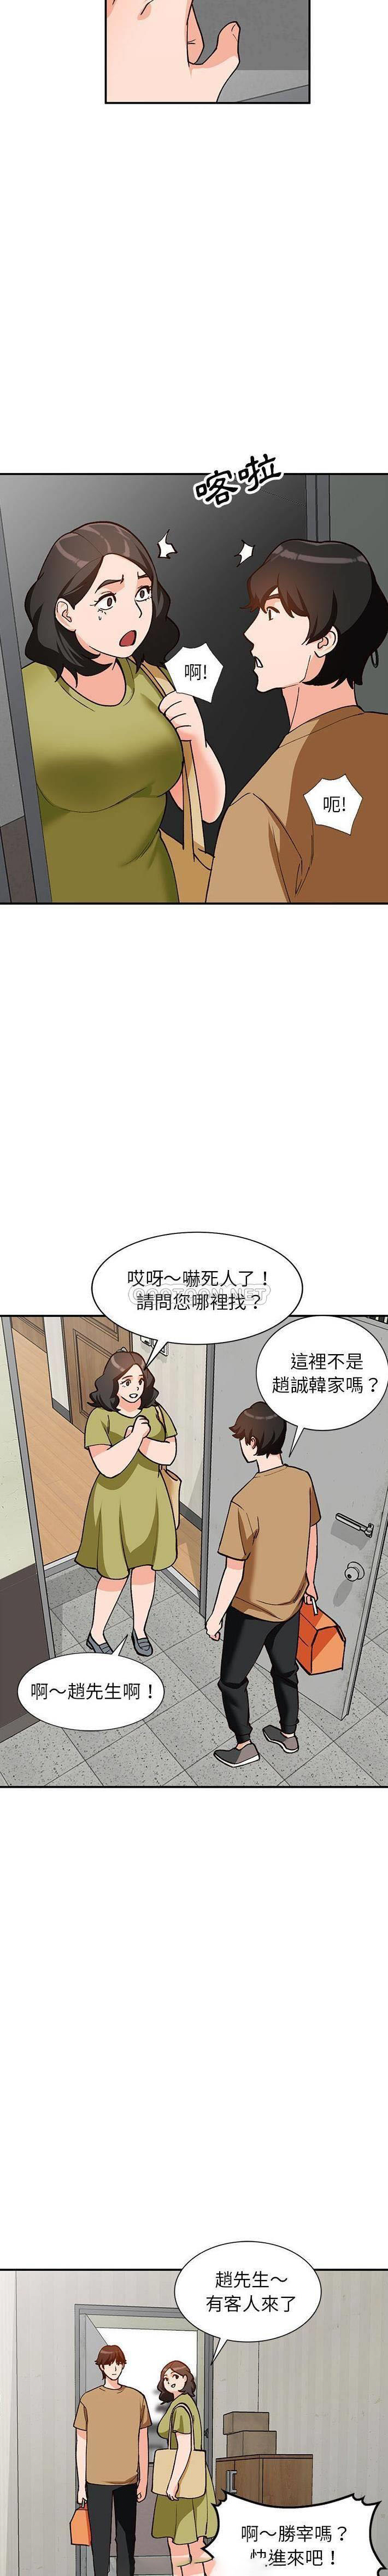 韩国污漫画 她們的小秘密(小鎮上的女人們) 第35话 15